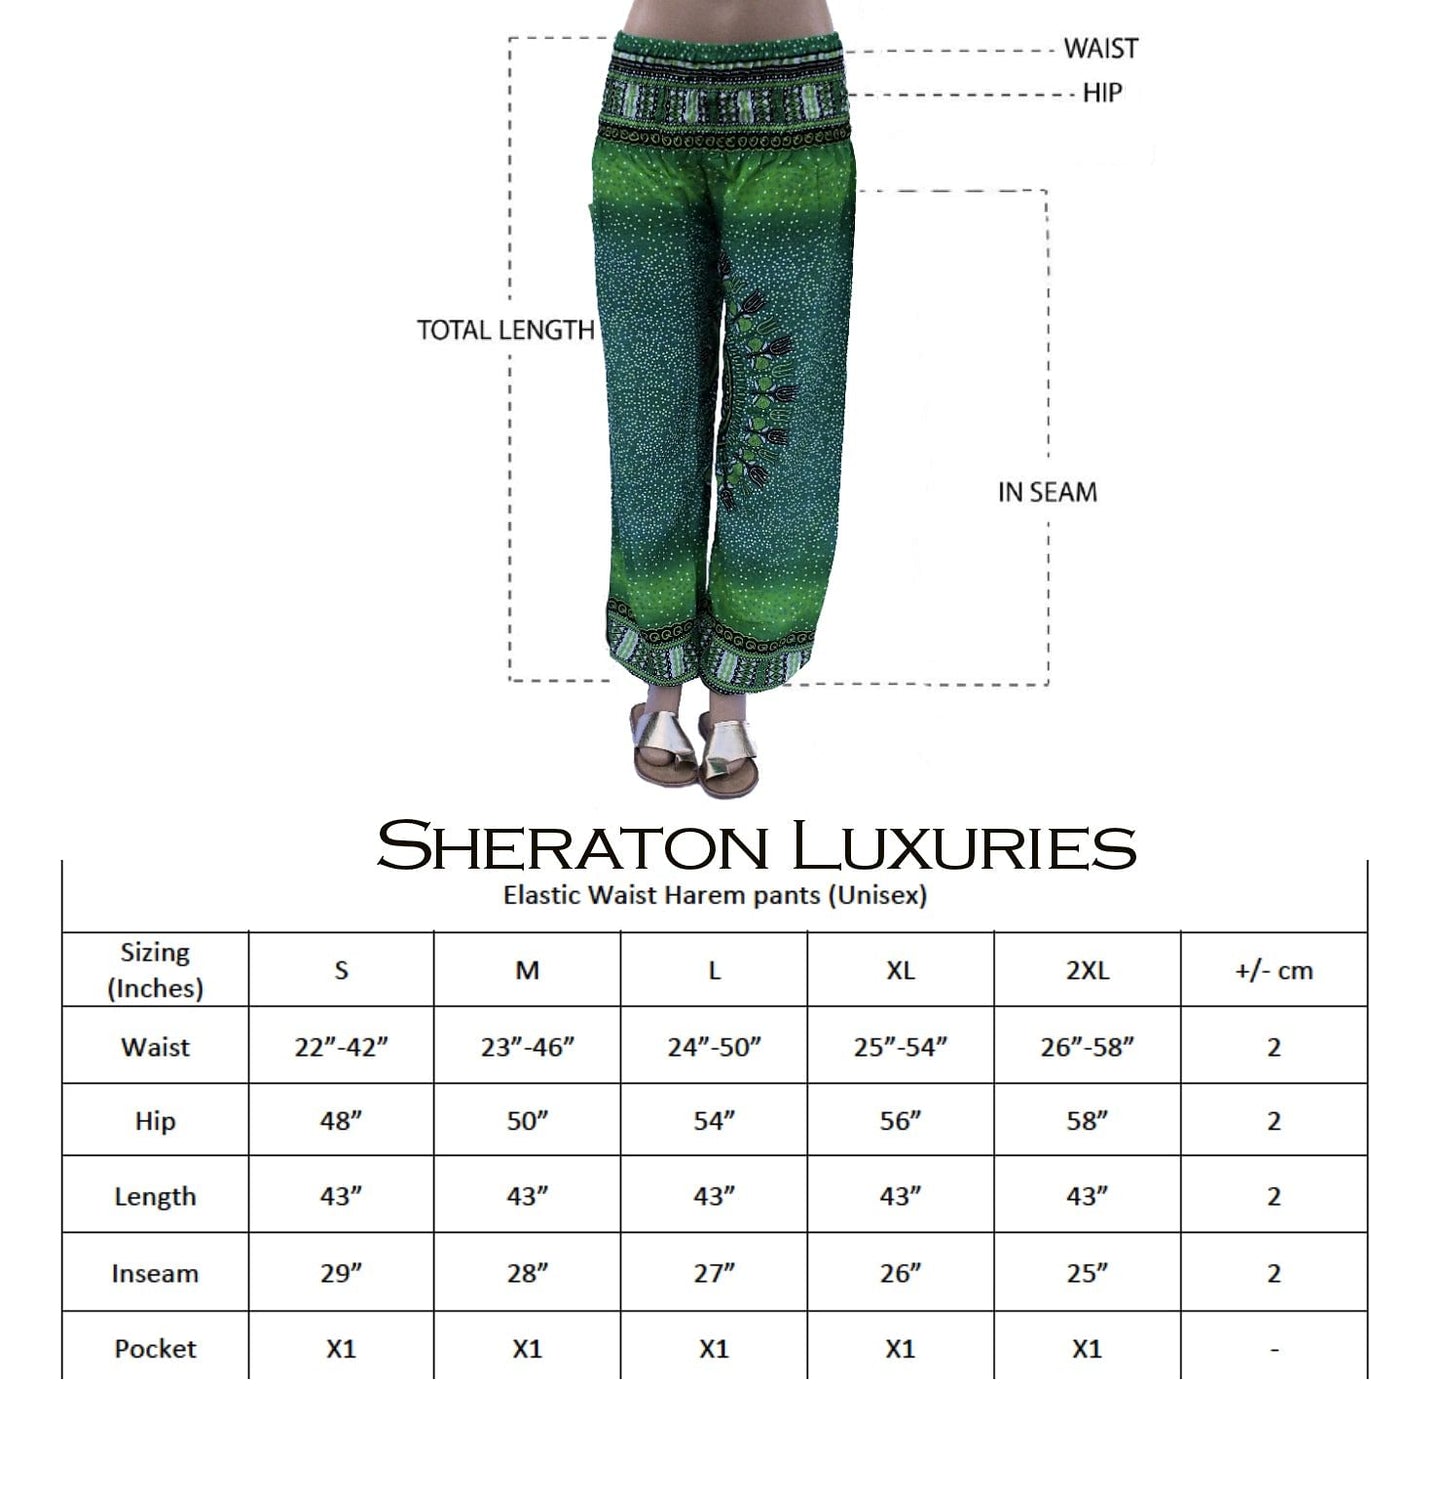 Harem Pants For Women. Harem Pant With Pattern & Big Pocket– Blue, Green, Pink, Red –Elastic Waist M